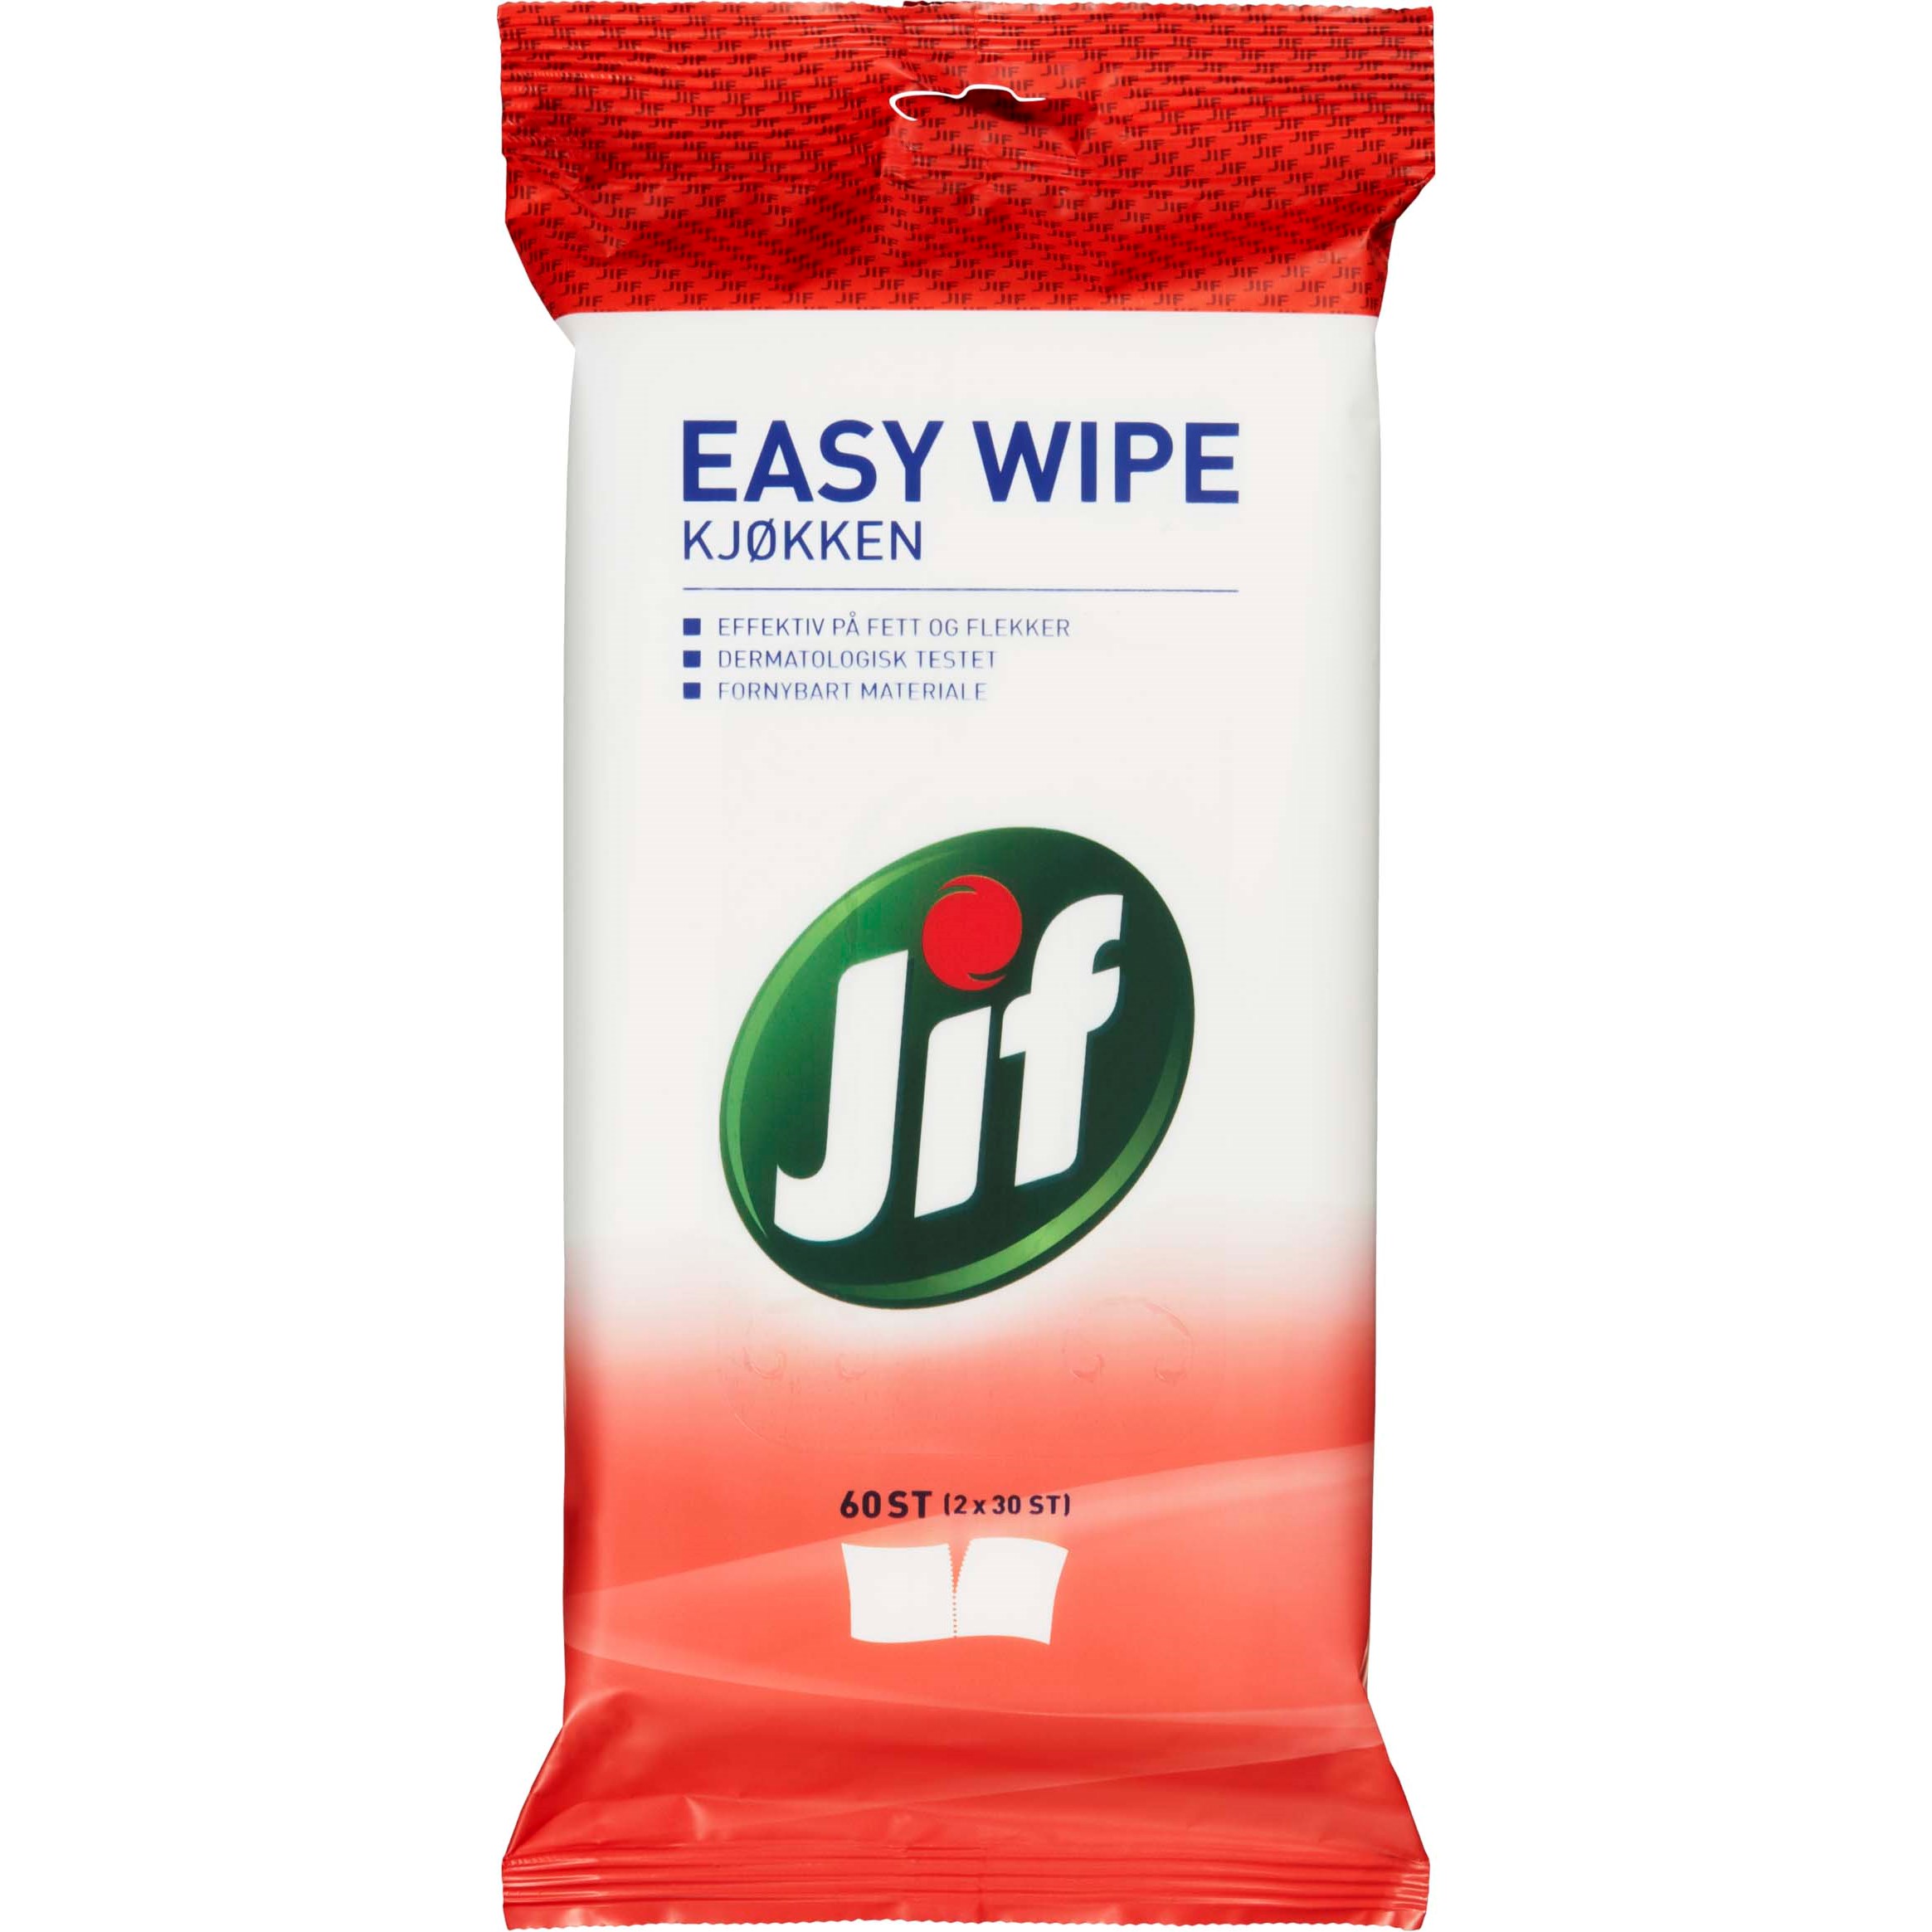 Bilde av Jif Easy Wipe Kjøkken 60 Stk